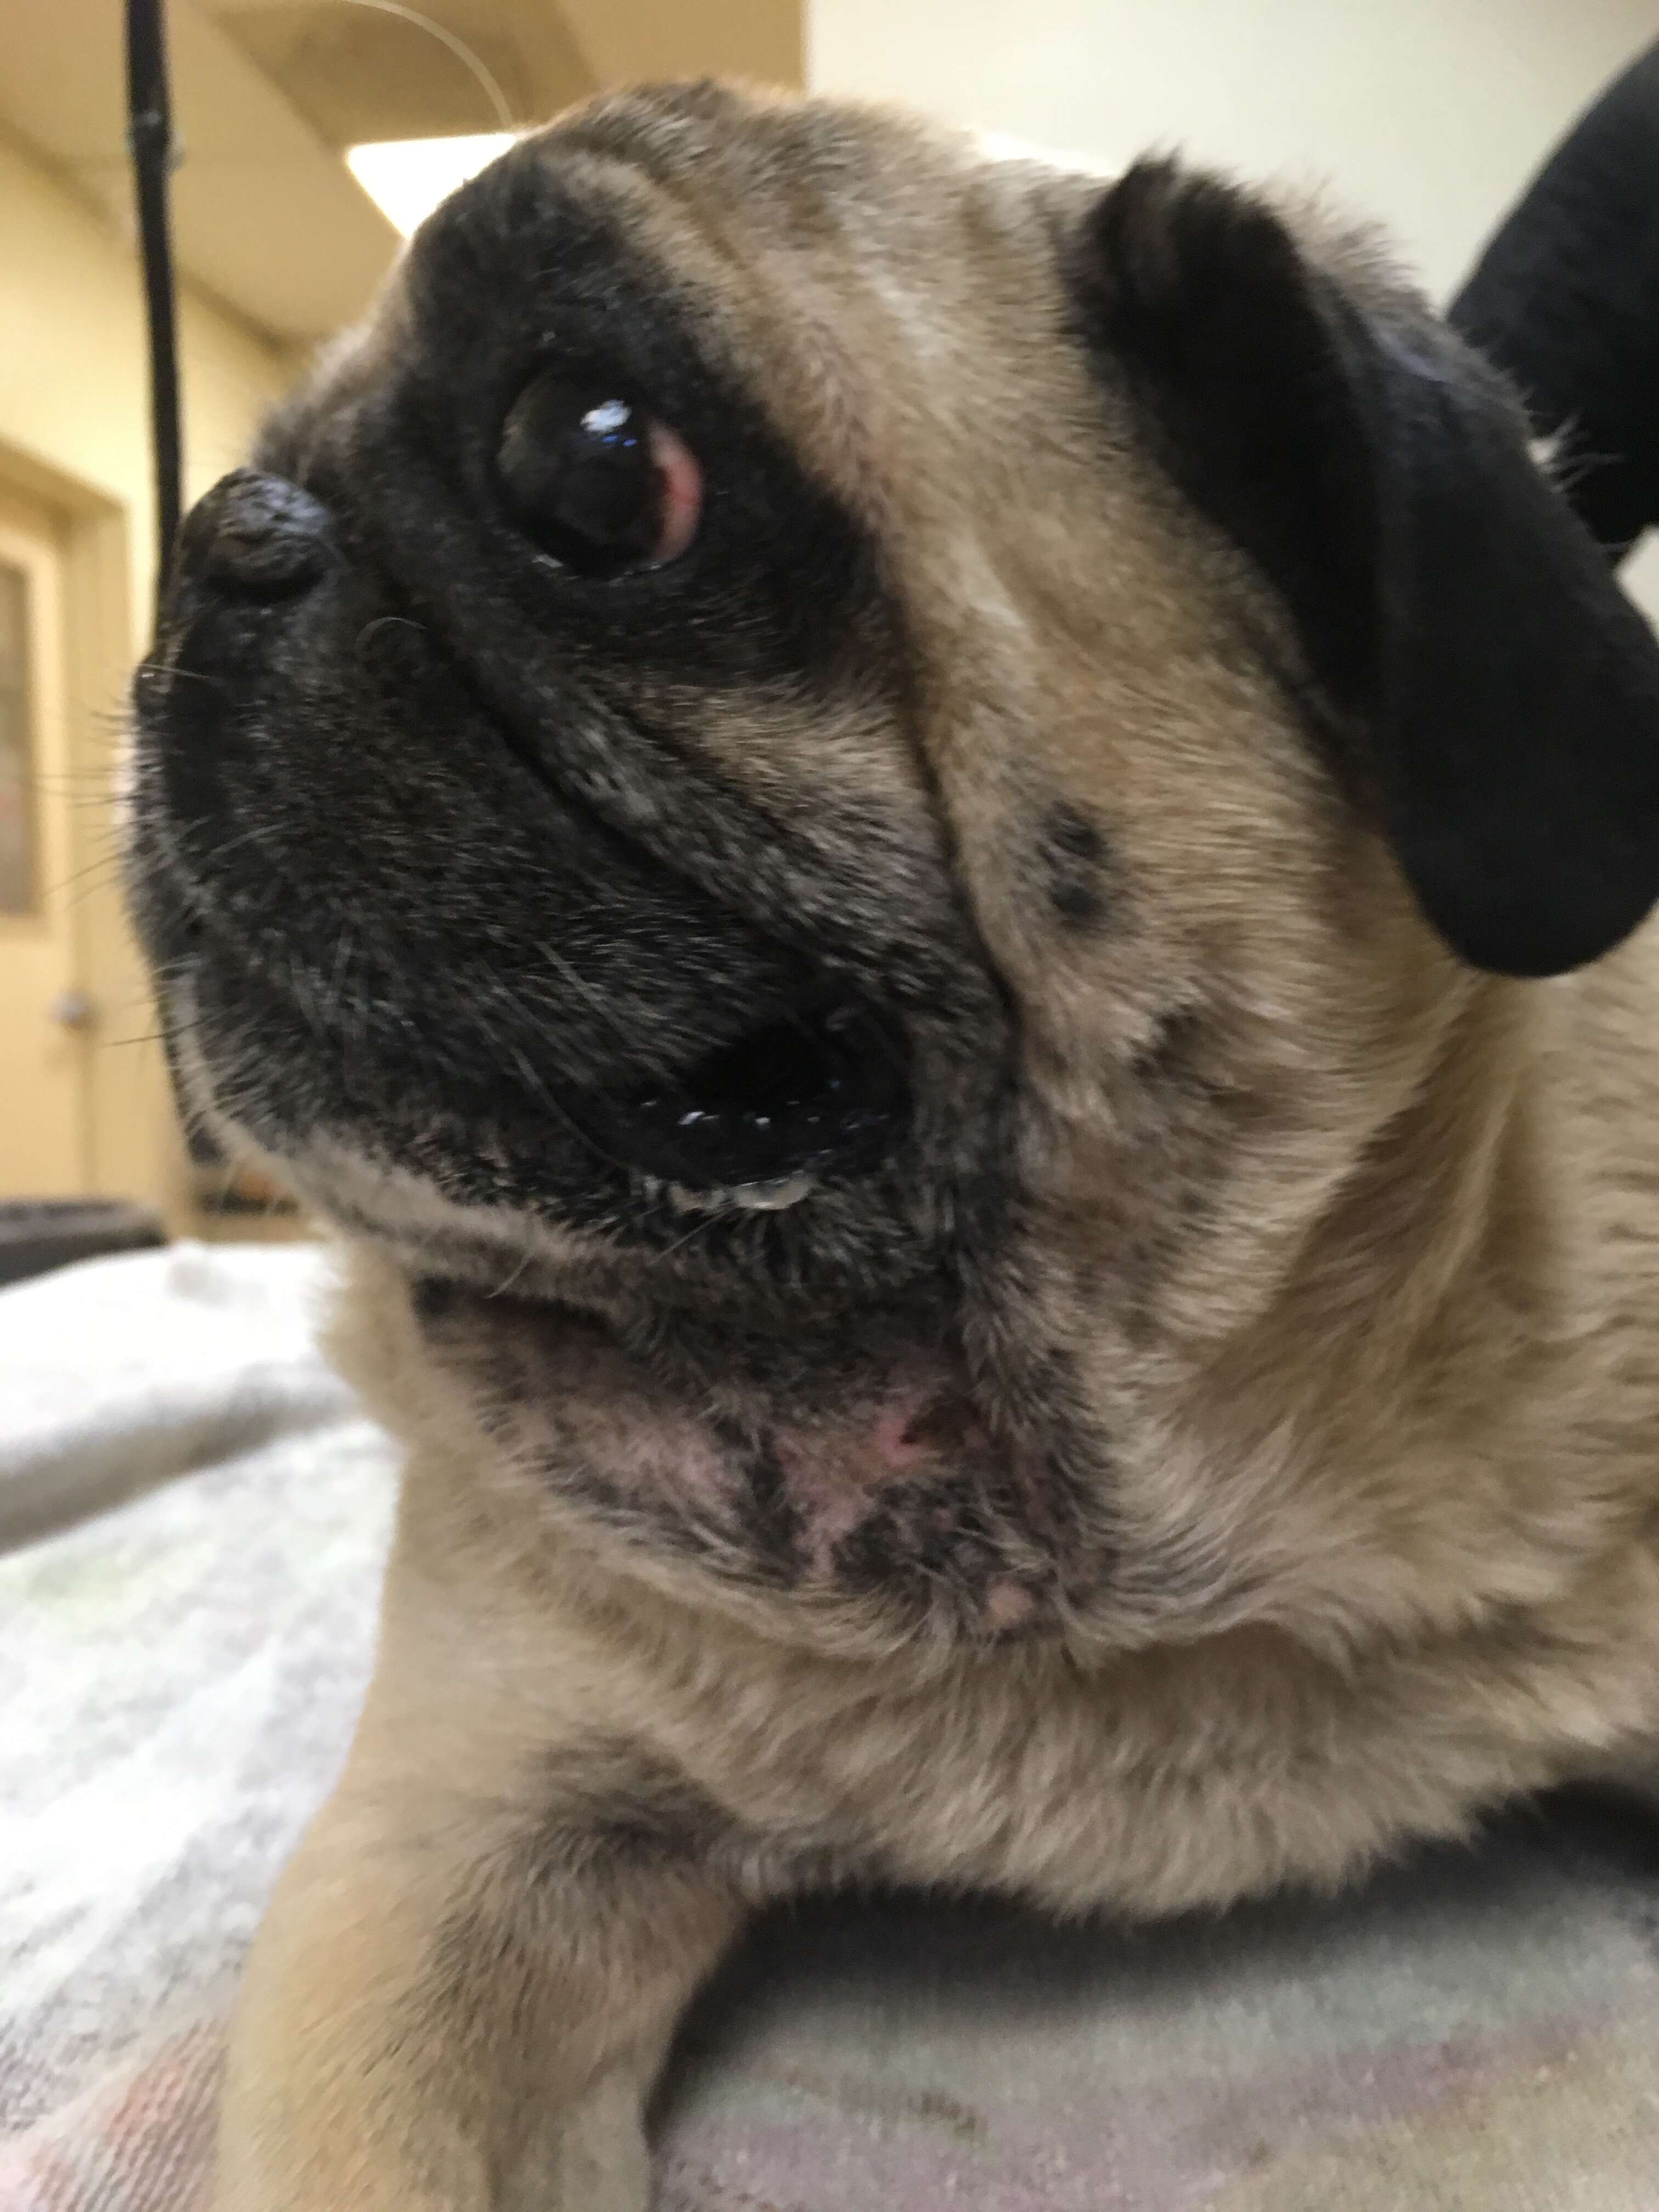 Rescued pug at vet